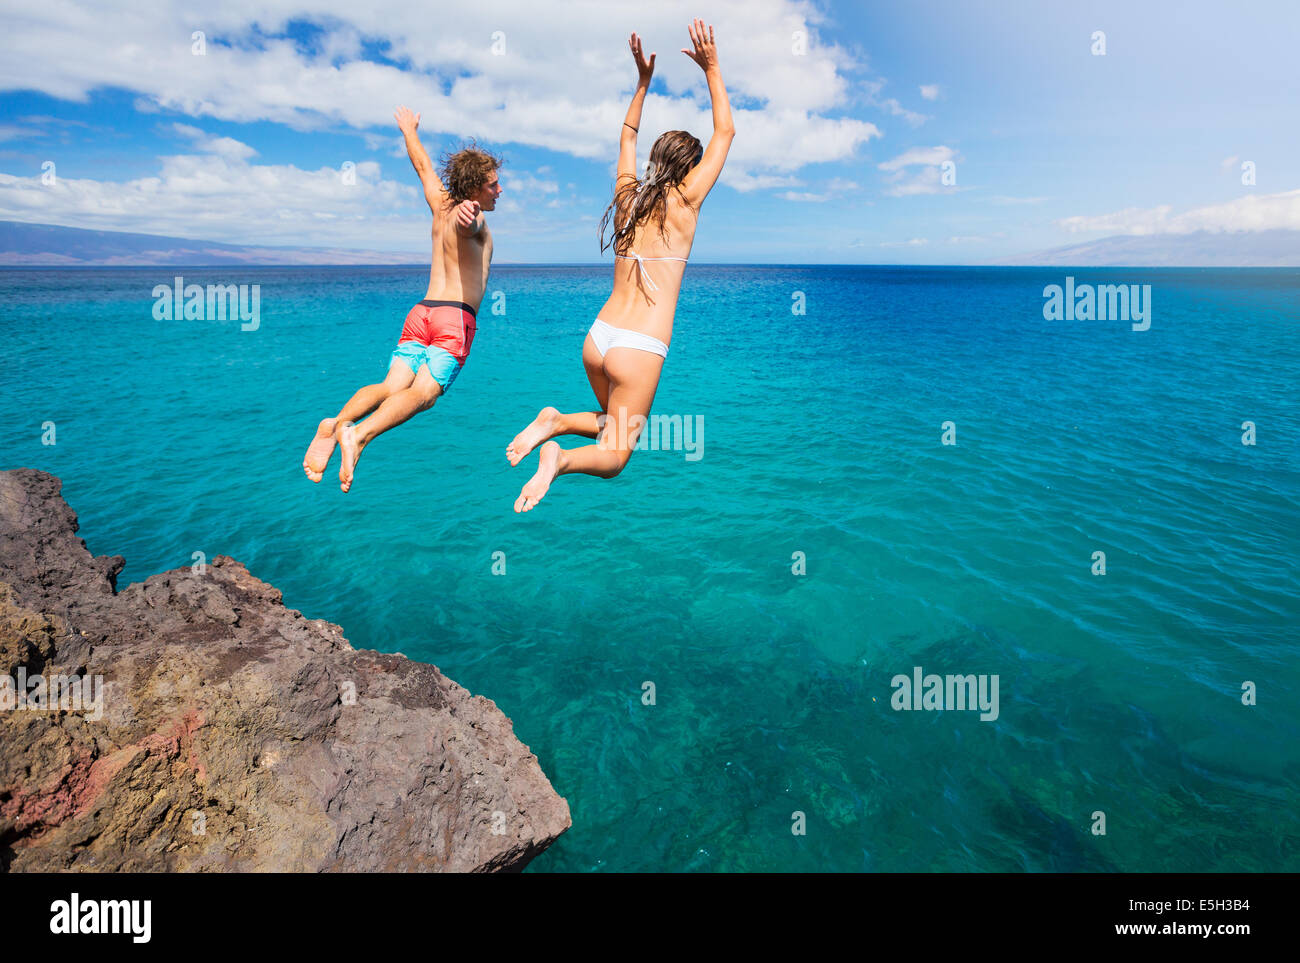 Freunde-Klippen springen ins Meer, Sommerspaß Lebensstil. Stockfoto